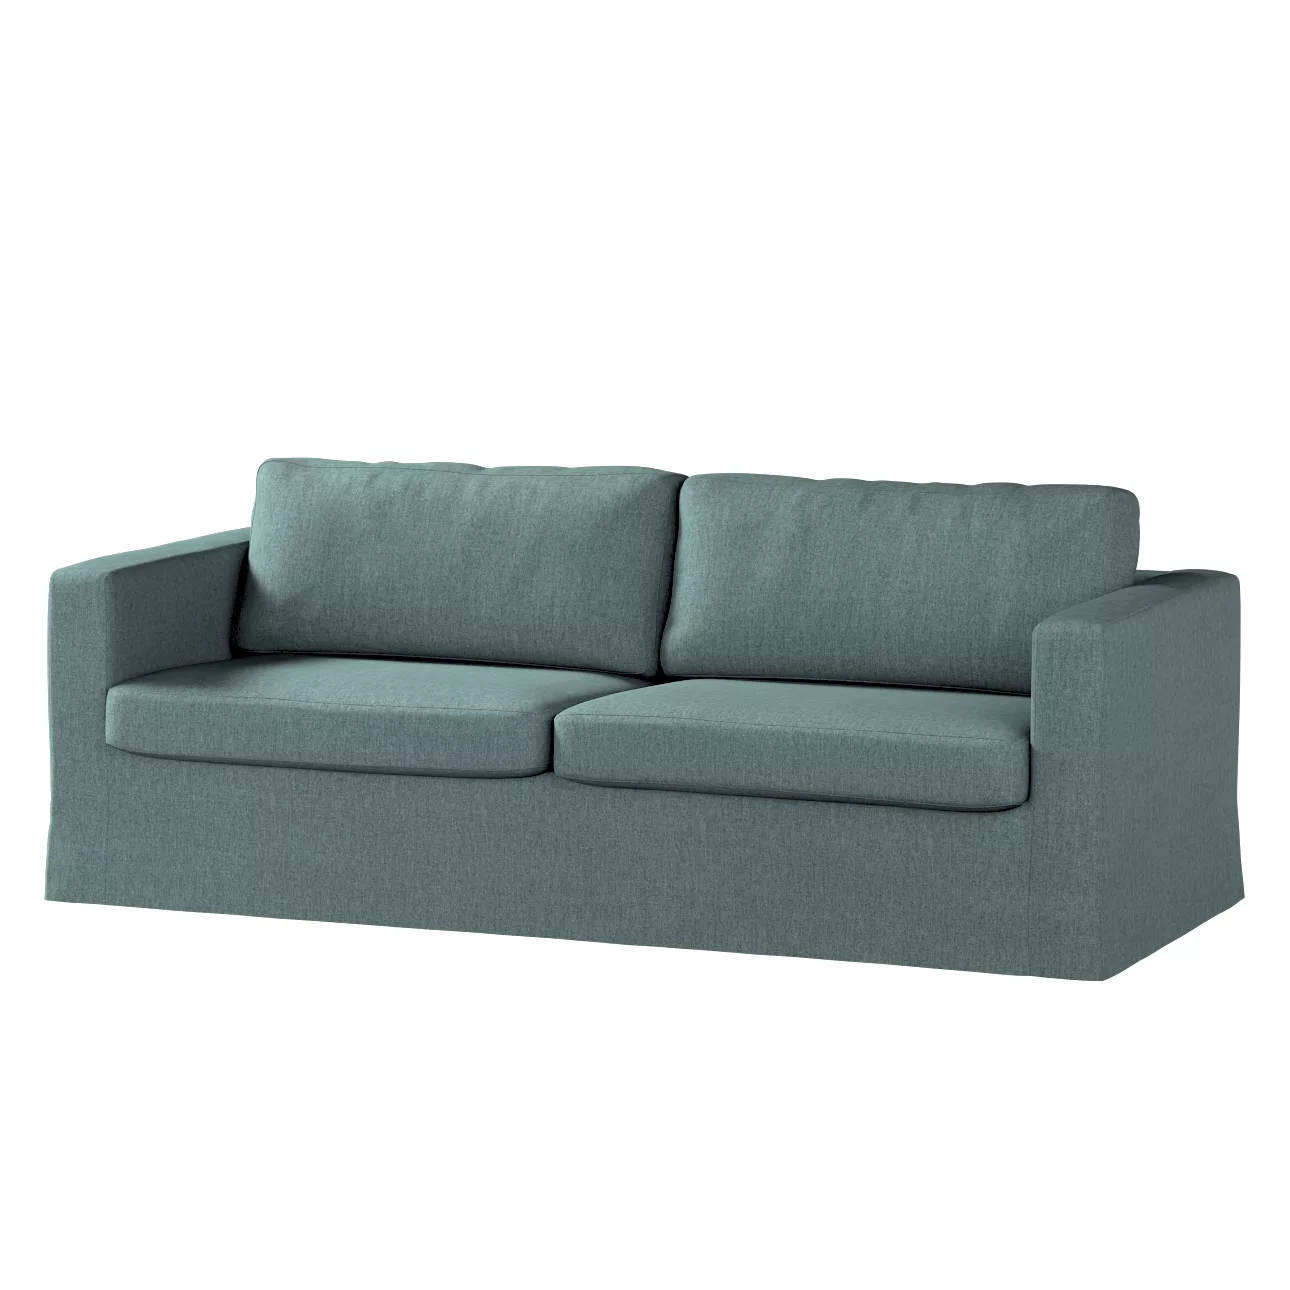 Bezug für Karlstad 3-Sitzer Sofa nicht ausklappbar, lang, grau- blau, Bezug günstig online kaufen